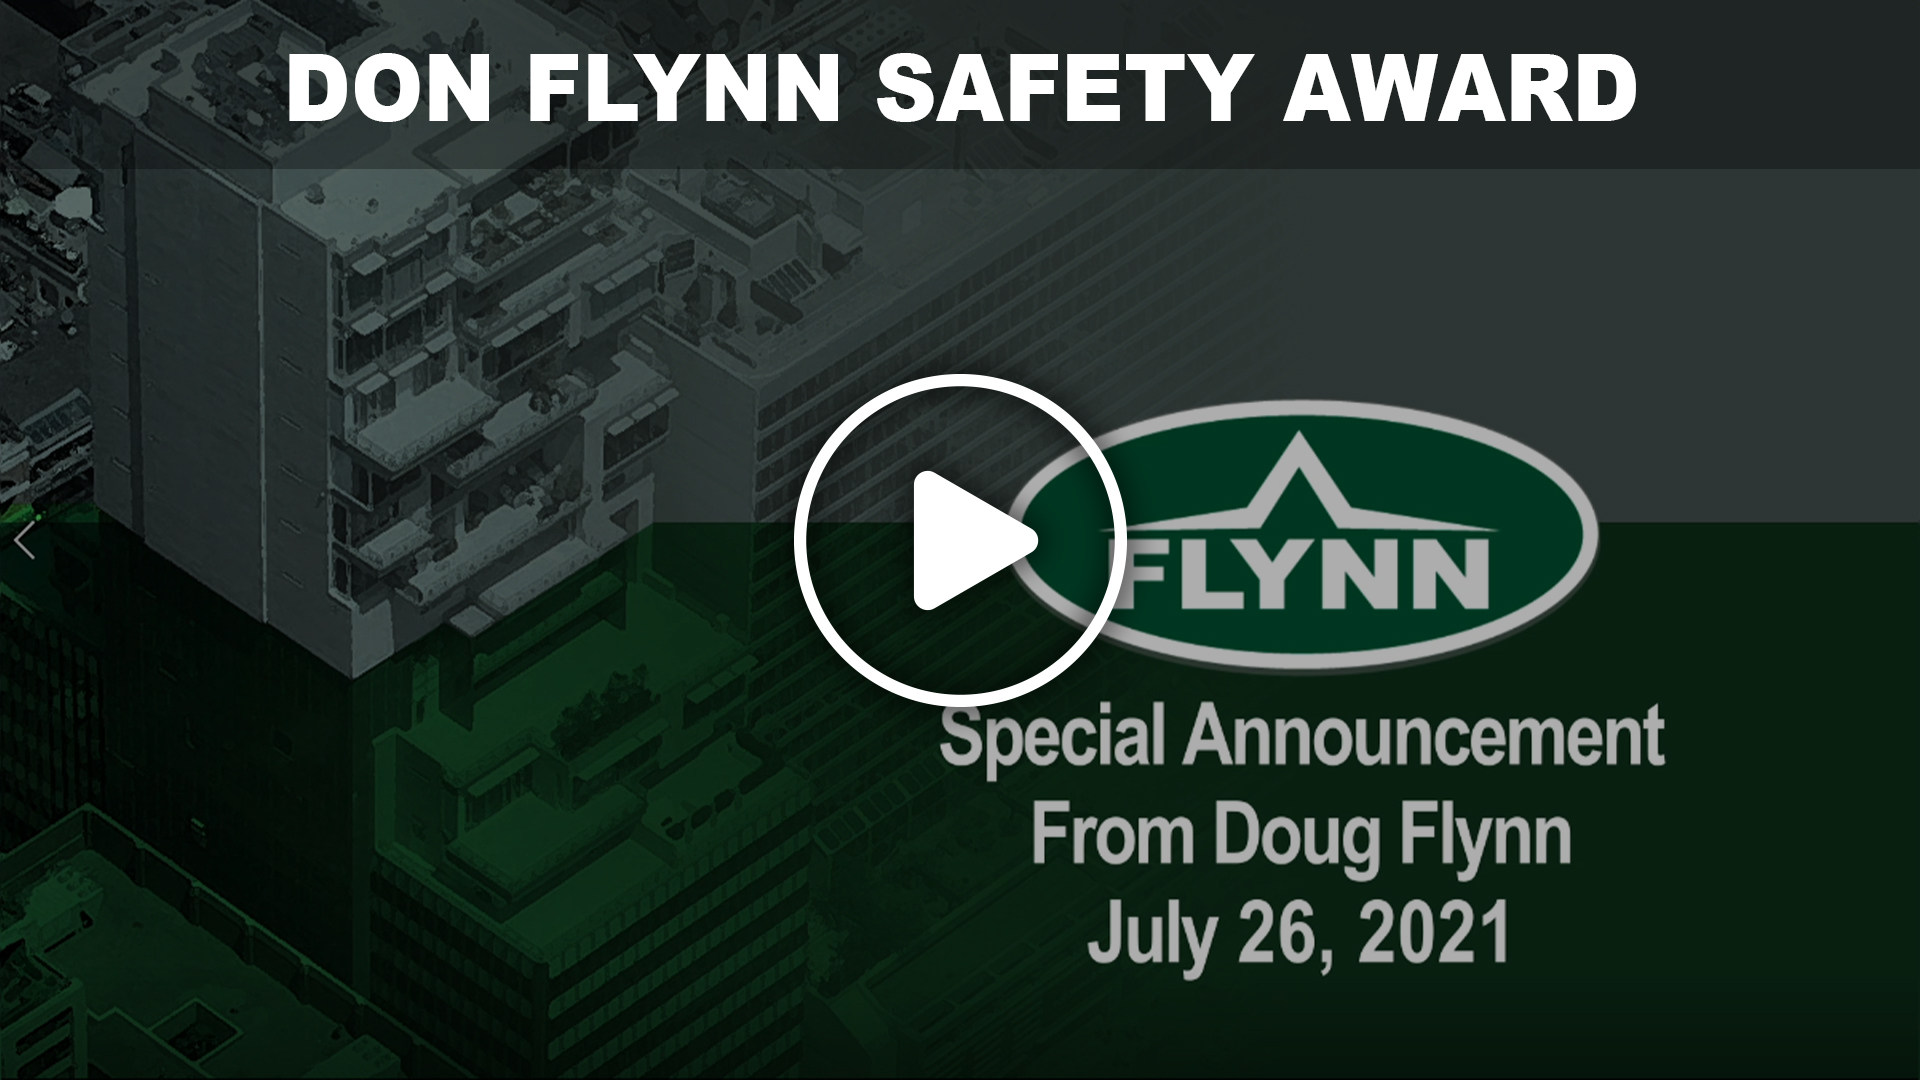 Don Flynn Safety Awards 2021